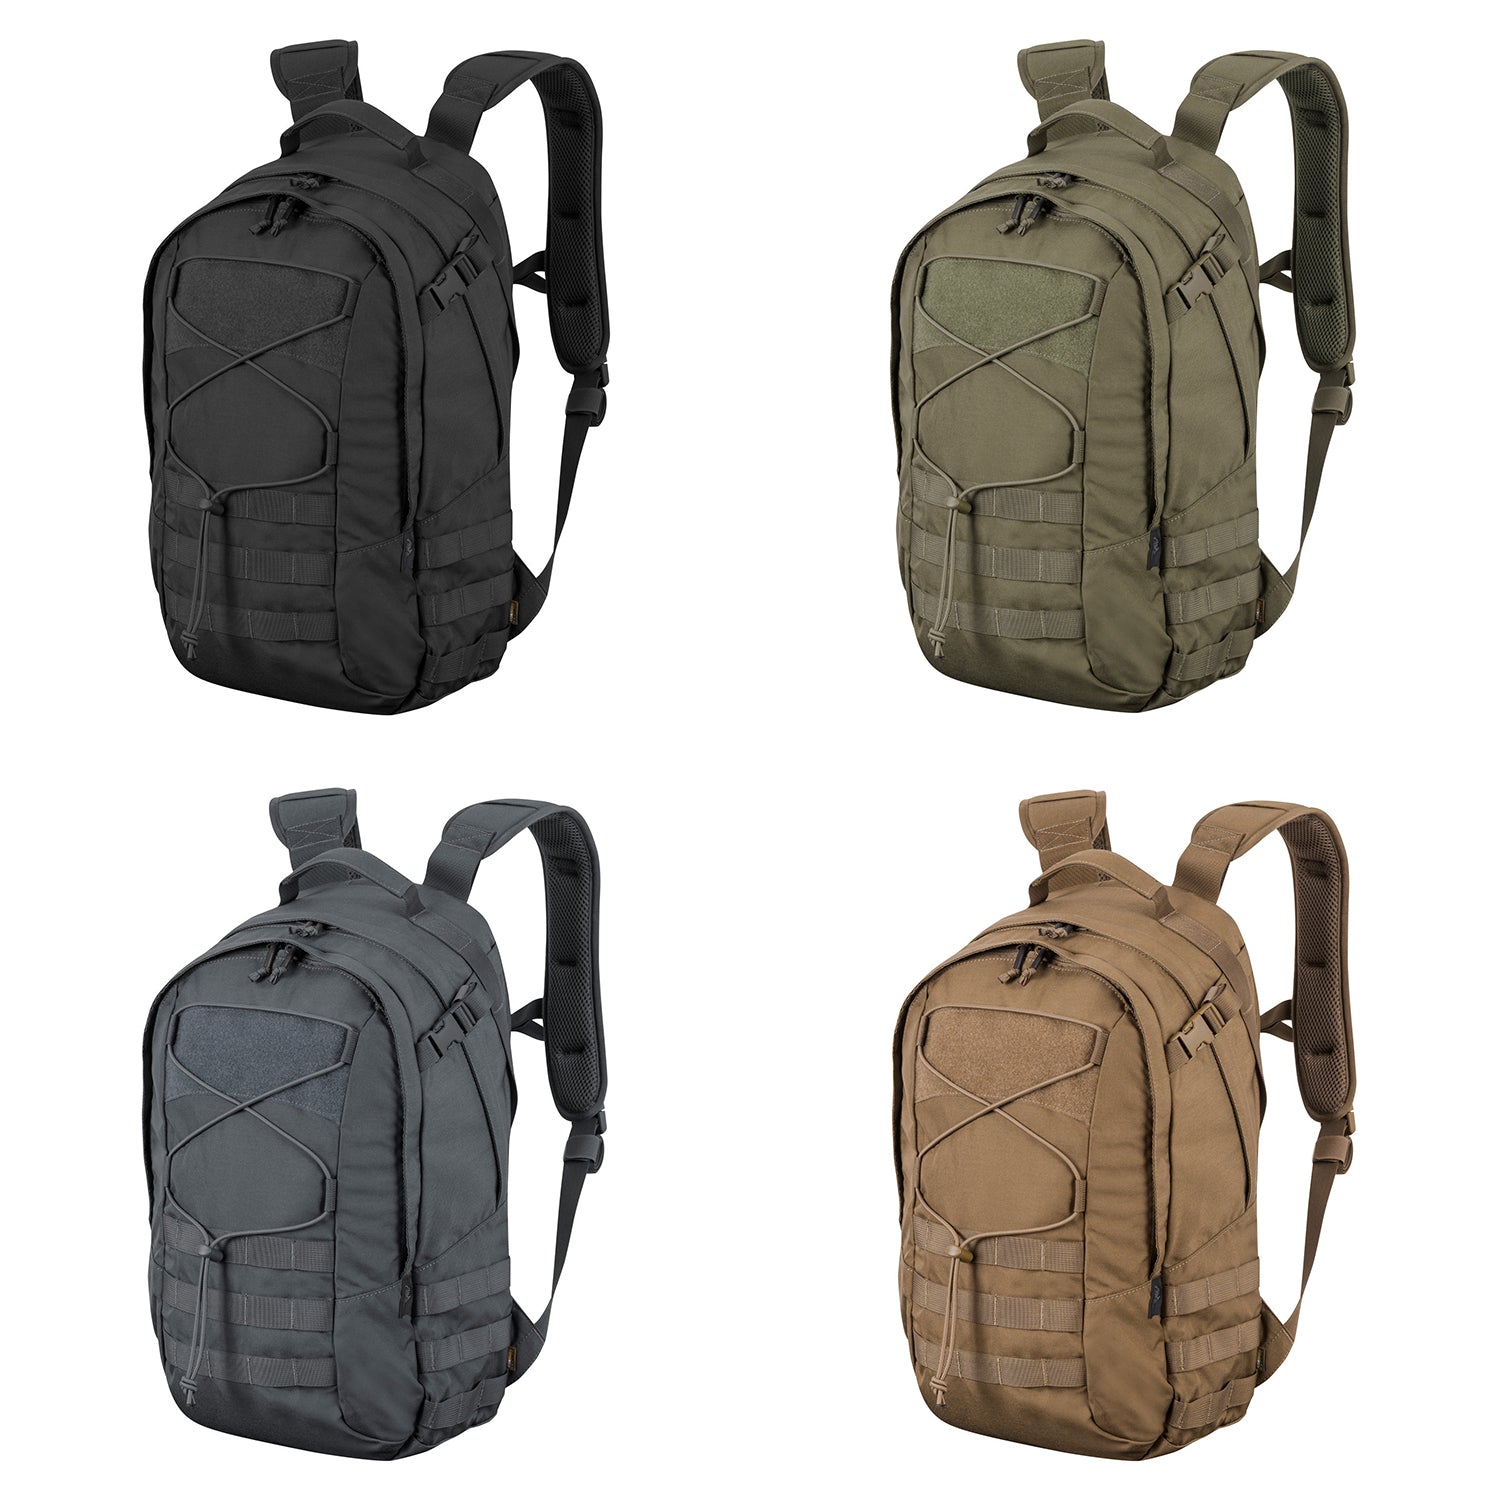 Mochila EDC Lite Backpack® - Nylon Helikon Tex